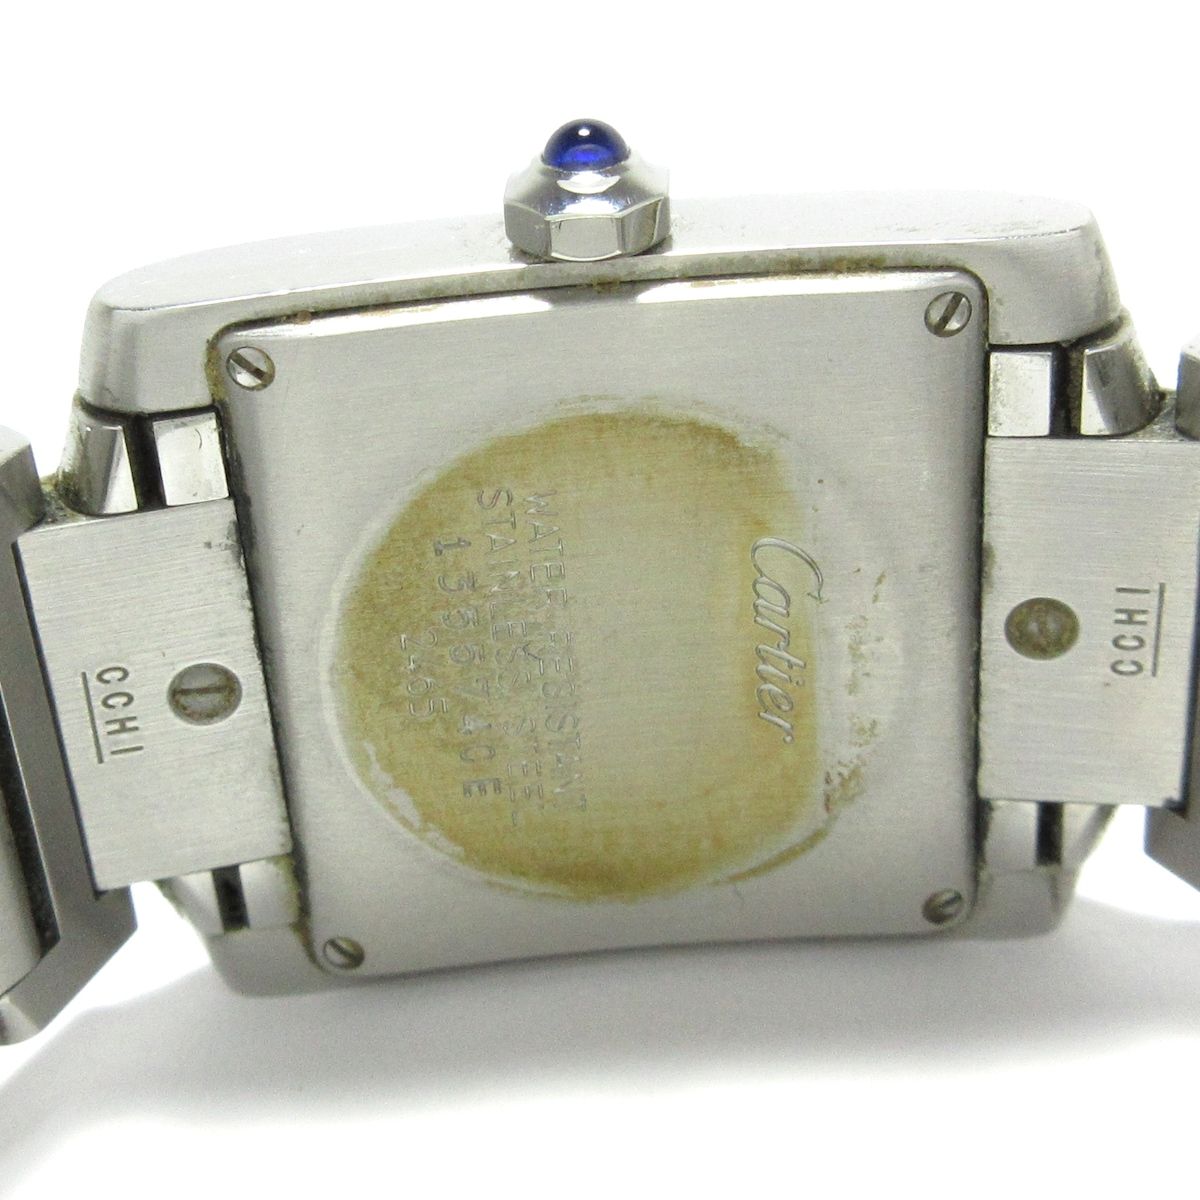 Cartier(カルティエ) 腕時計 タンクフランセーズMM W51011Q3 ボーイズ SS アイボリー - メルカリ